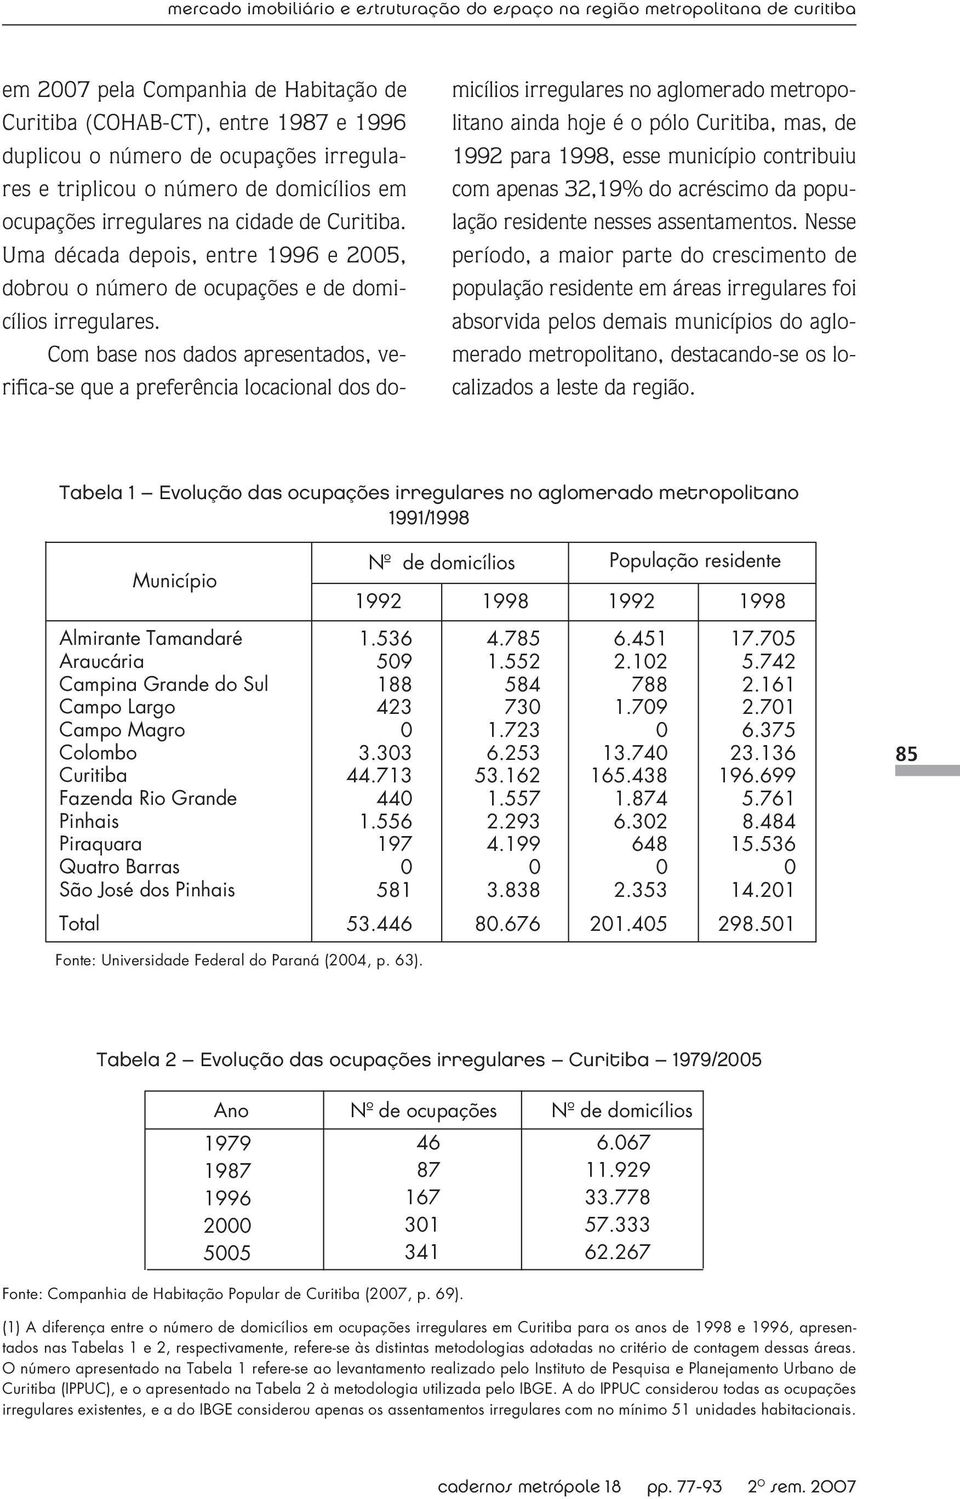 Com base nos dados apresentados, verifica-se que a preferência locacional dos do- micílios irregulares no aglomerado metropolitano ainda hoje é o pólo Curitiba, mas, de 1992 para 1998, esse município